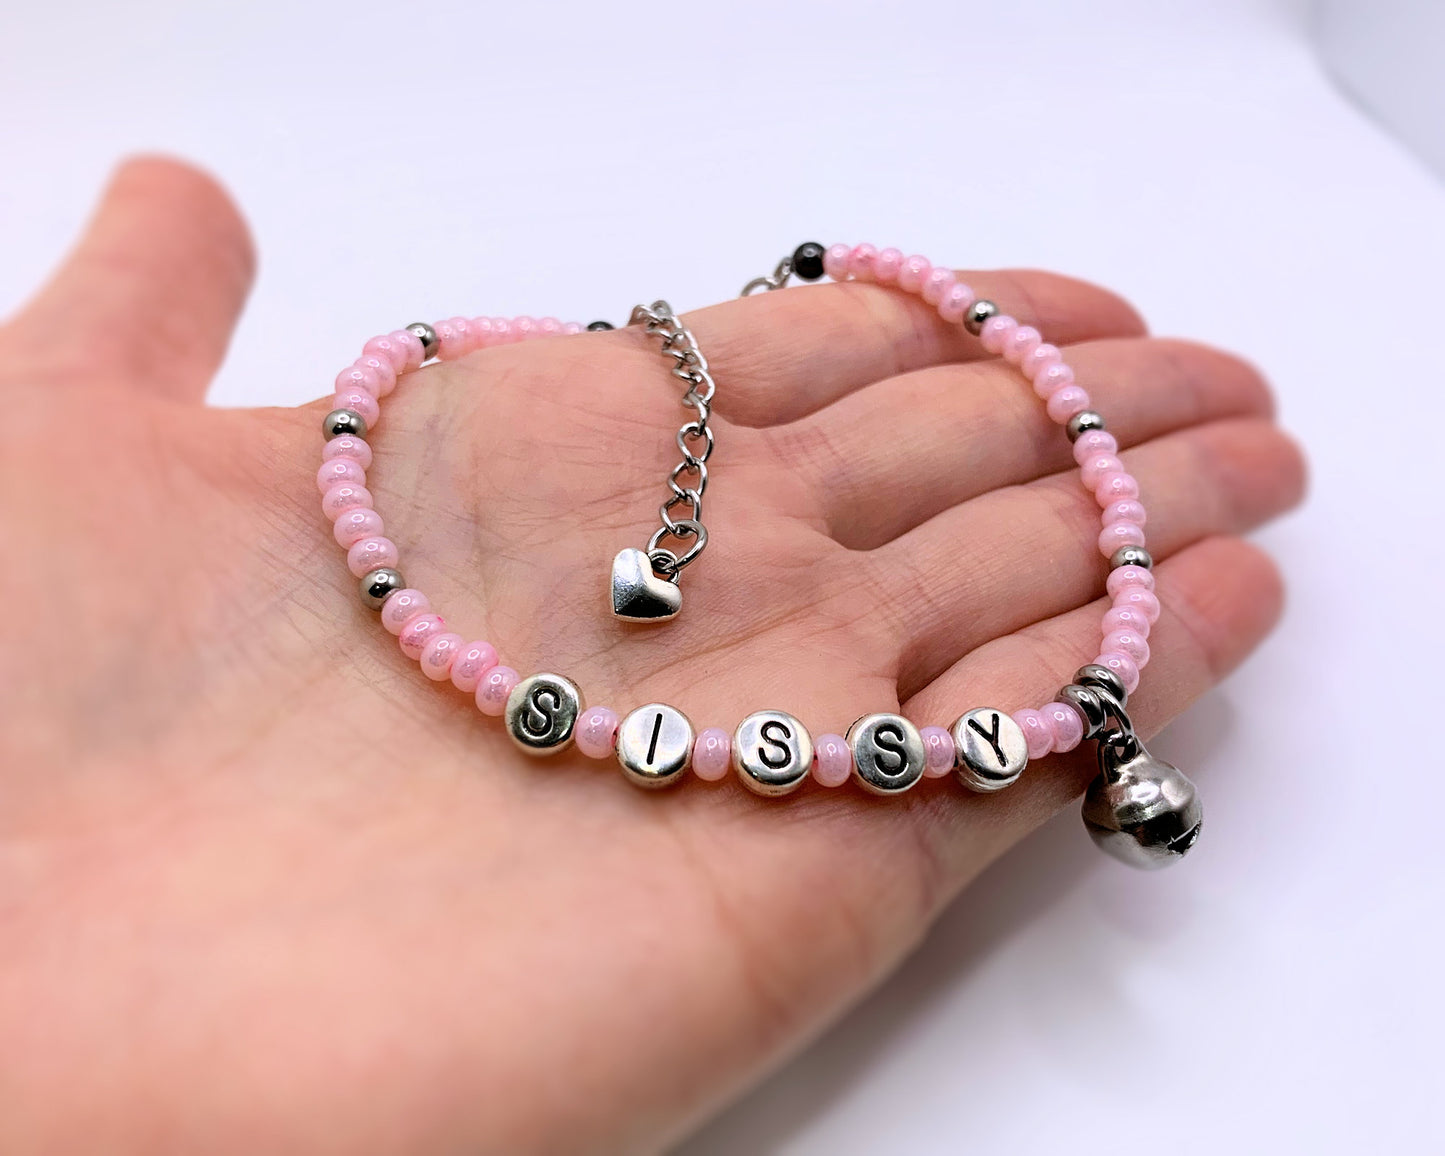 Sissy Anklet / Bracelet